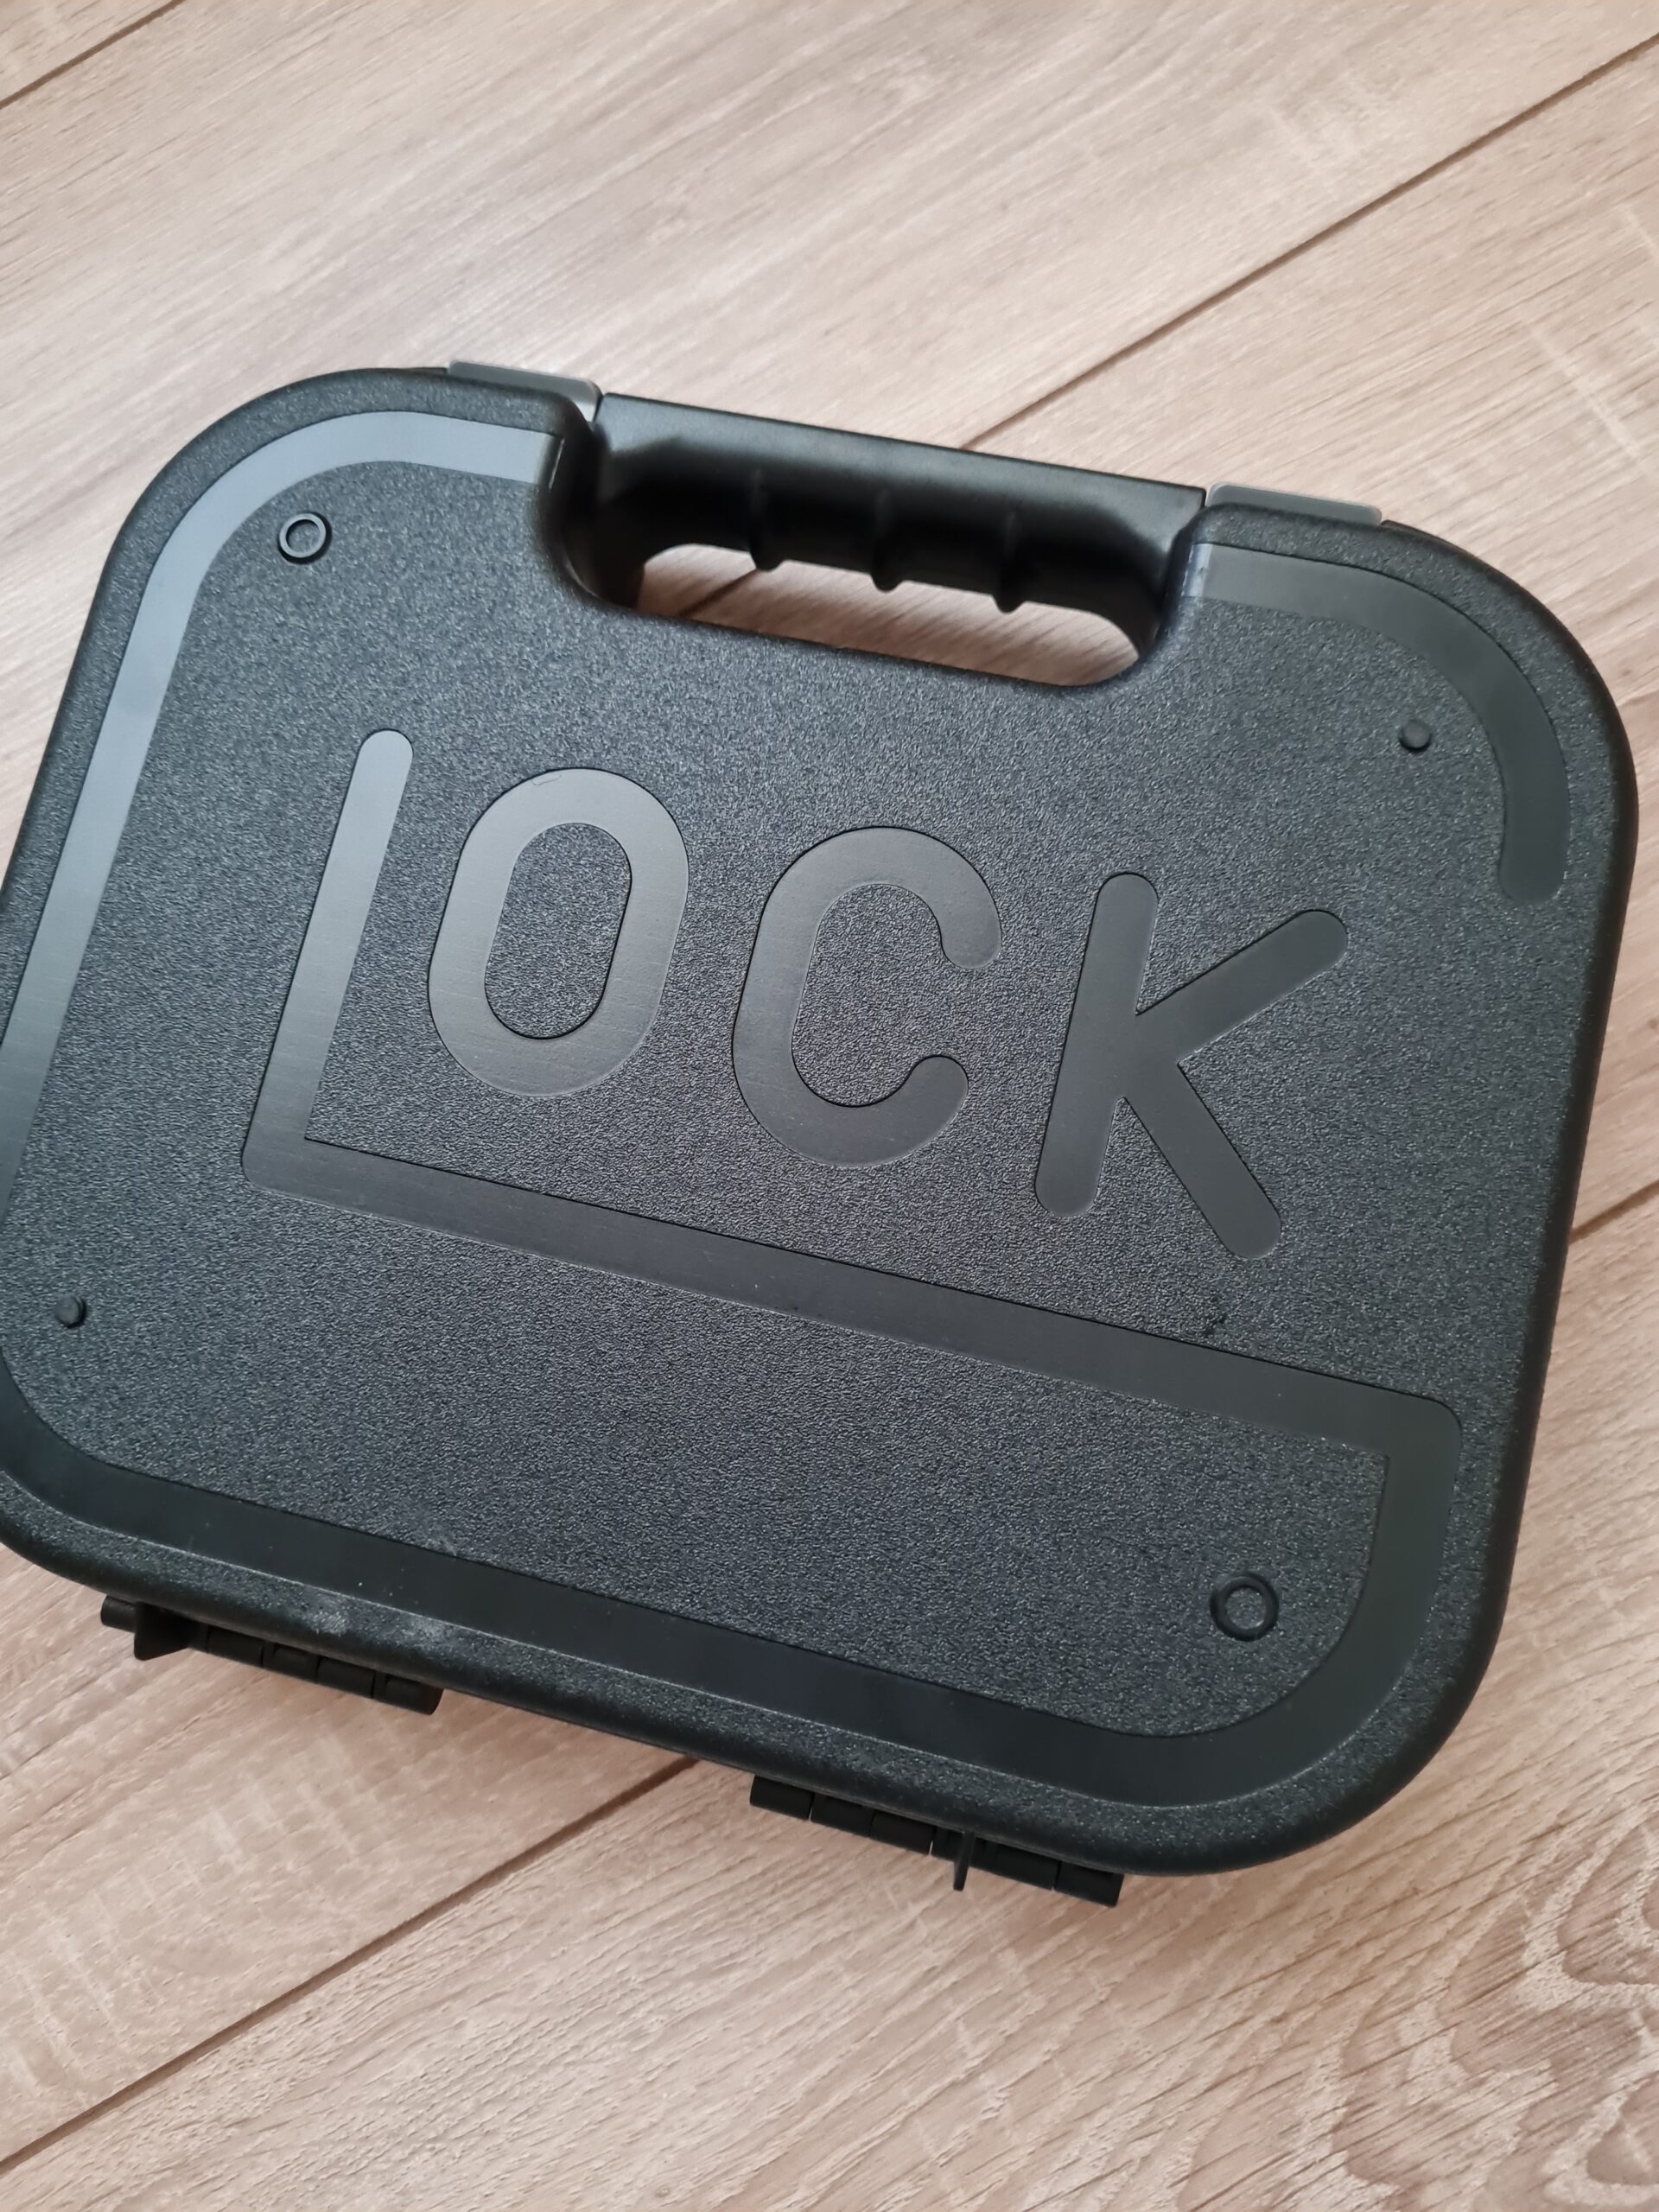 0 glock